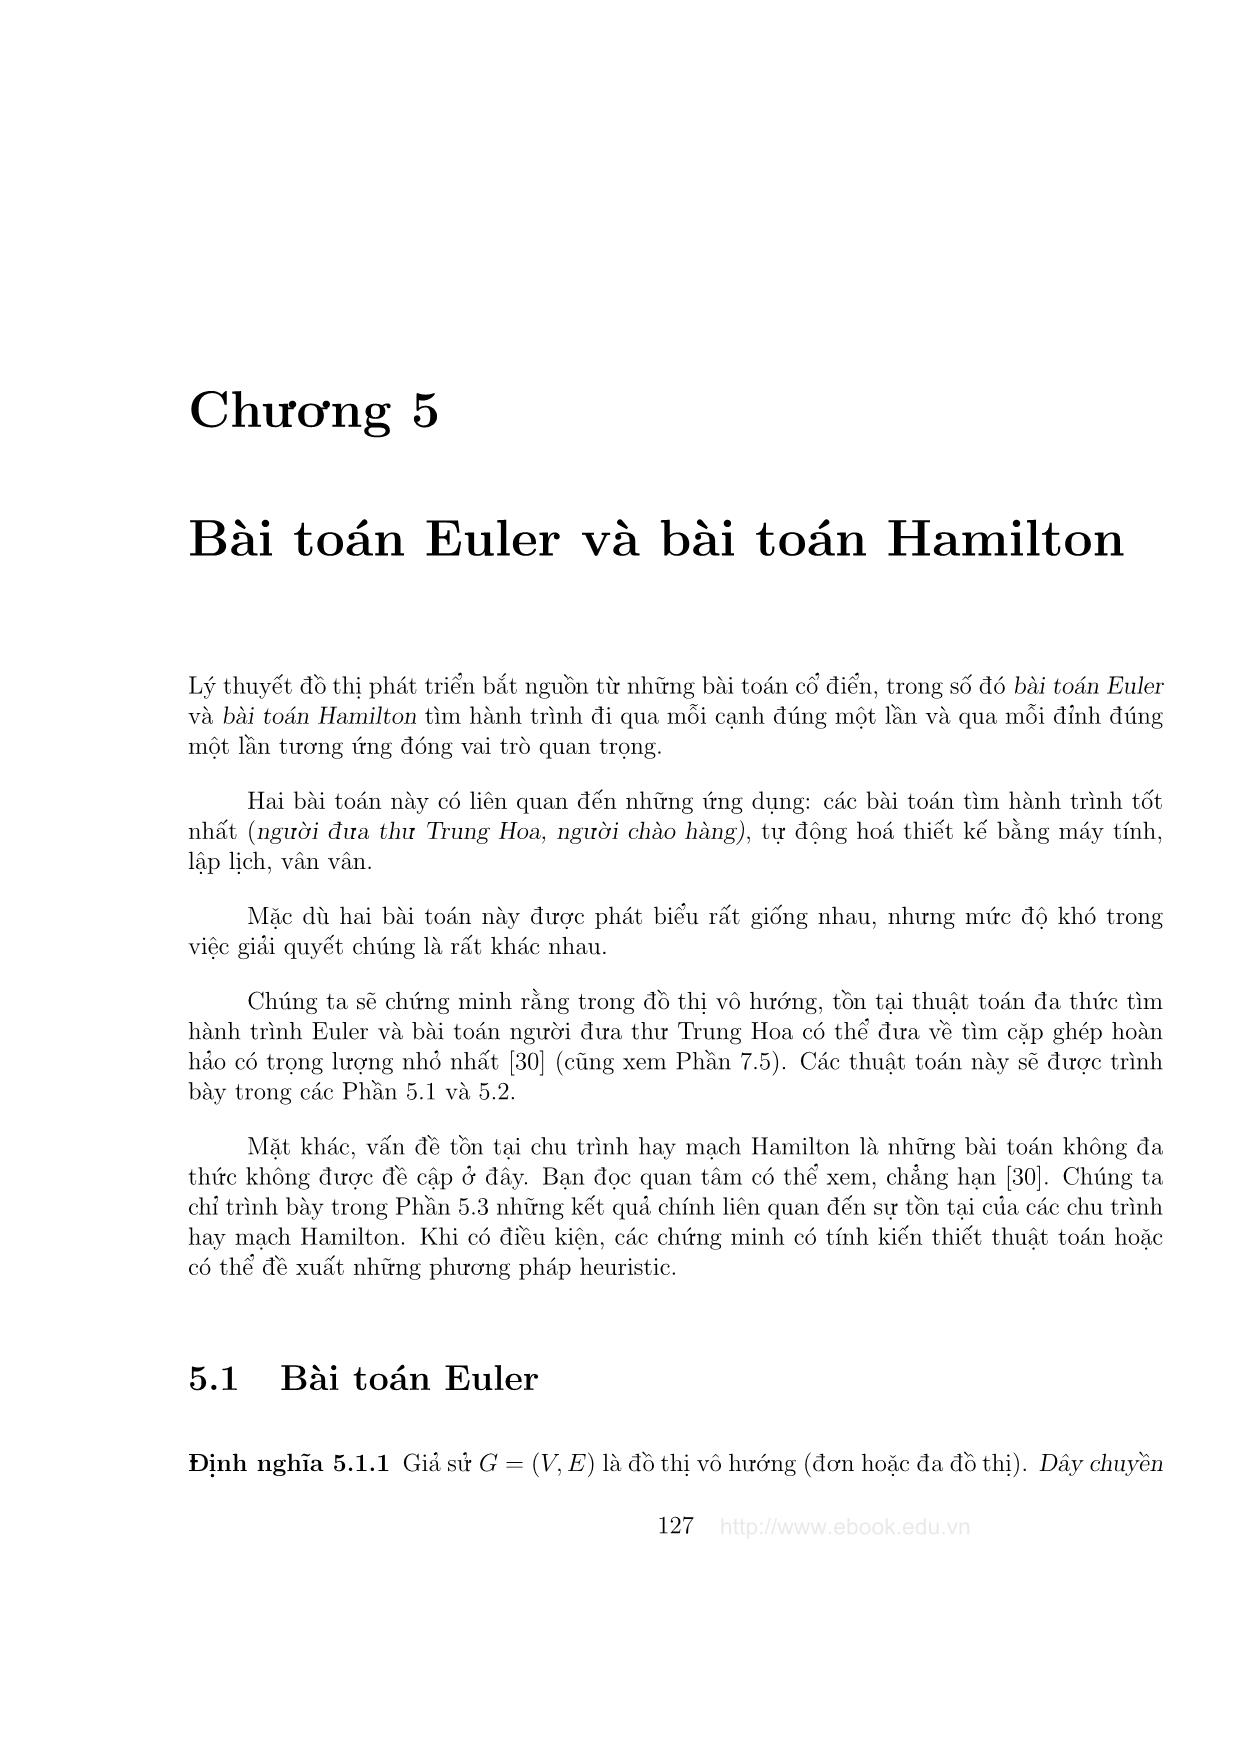 Giáo trình Đồ thị và các thuật toán - Chương 5: Bài toán Euler và bài toán Hamilton trang 1